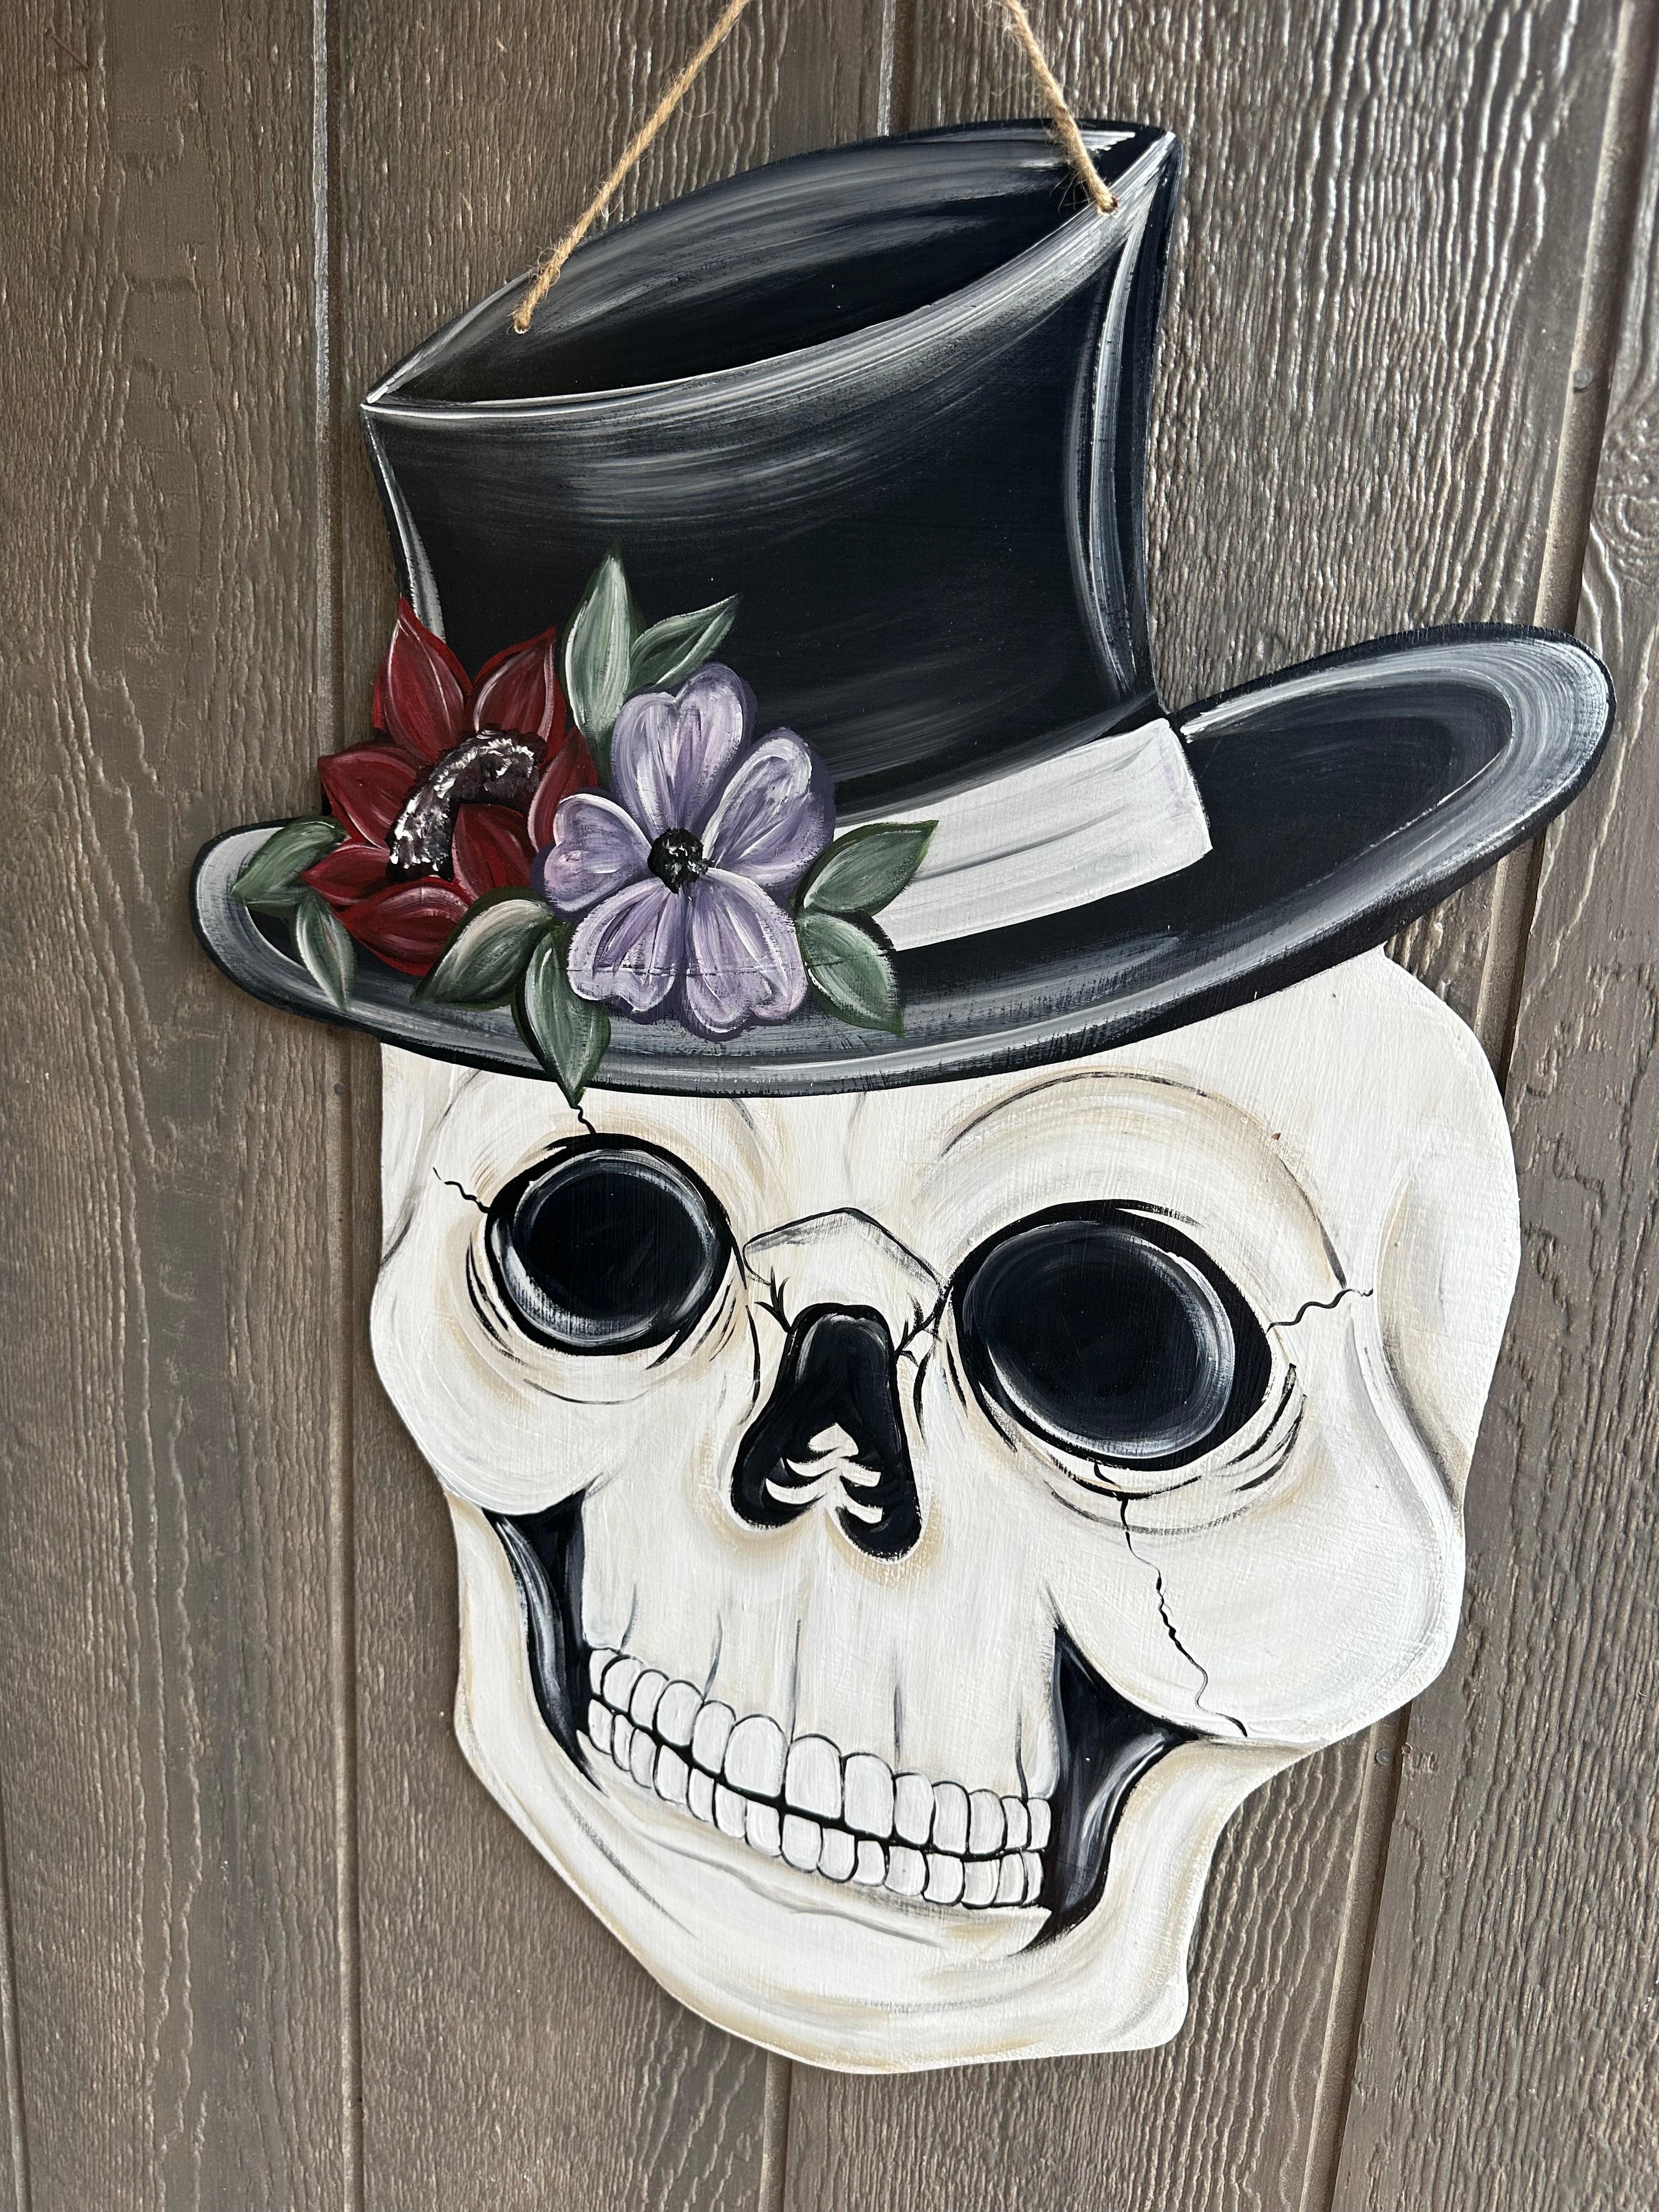 Skull With Hat Door Hanger